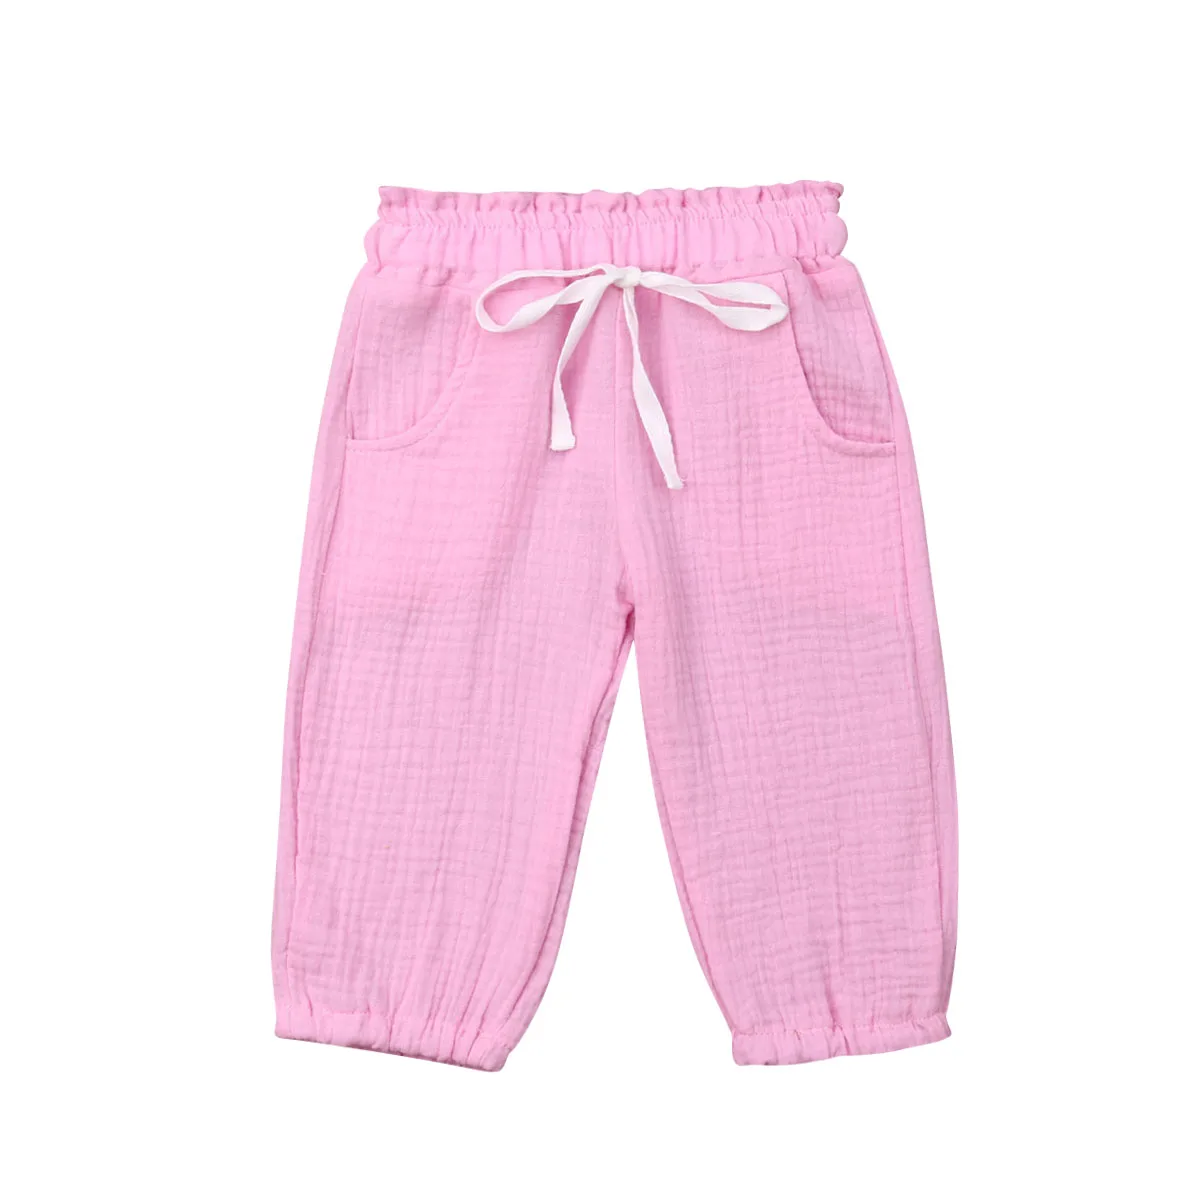 PUDCOCO поп-малыш детская одежда для девочек одноцветное пены хлопок мнется шаровары брюки модные леггинсы в повседневном стиле, брюки От 0 до 4 лет - Цвет: Розовый